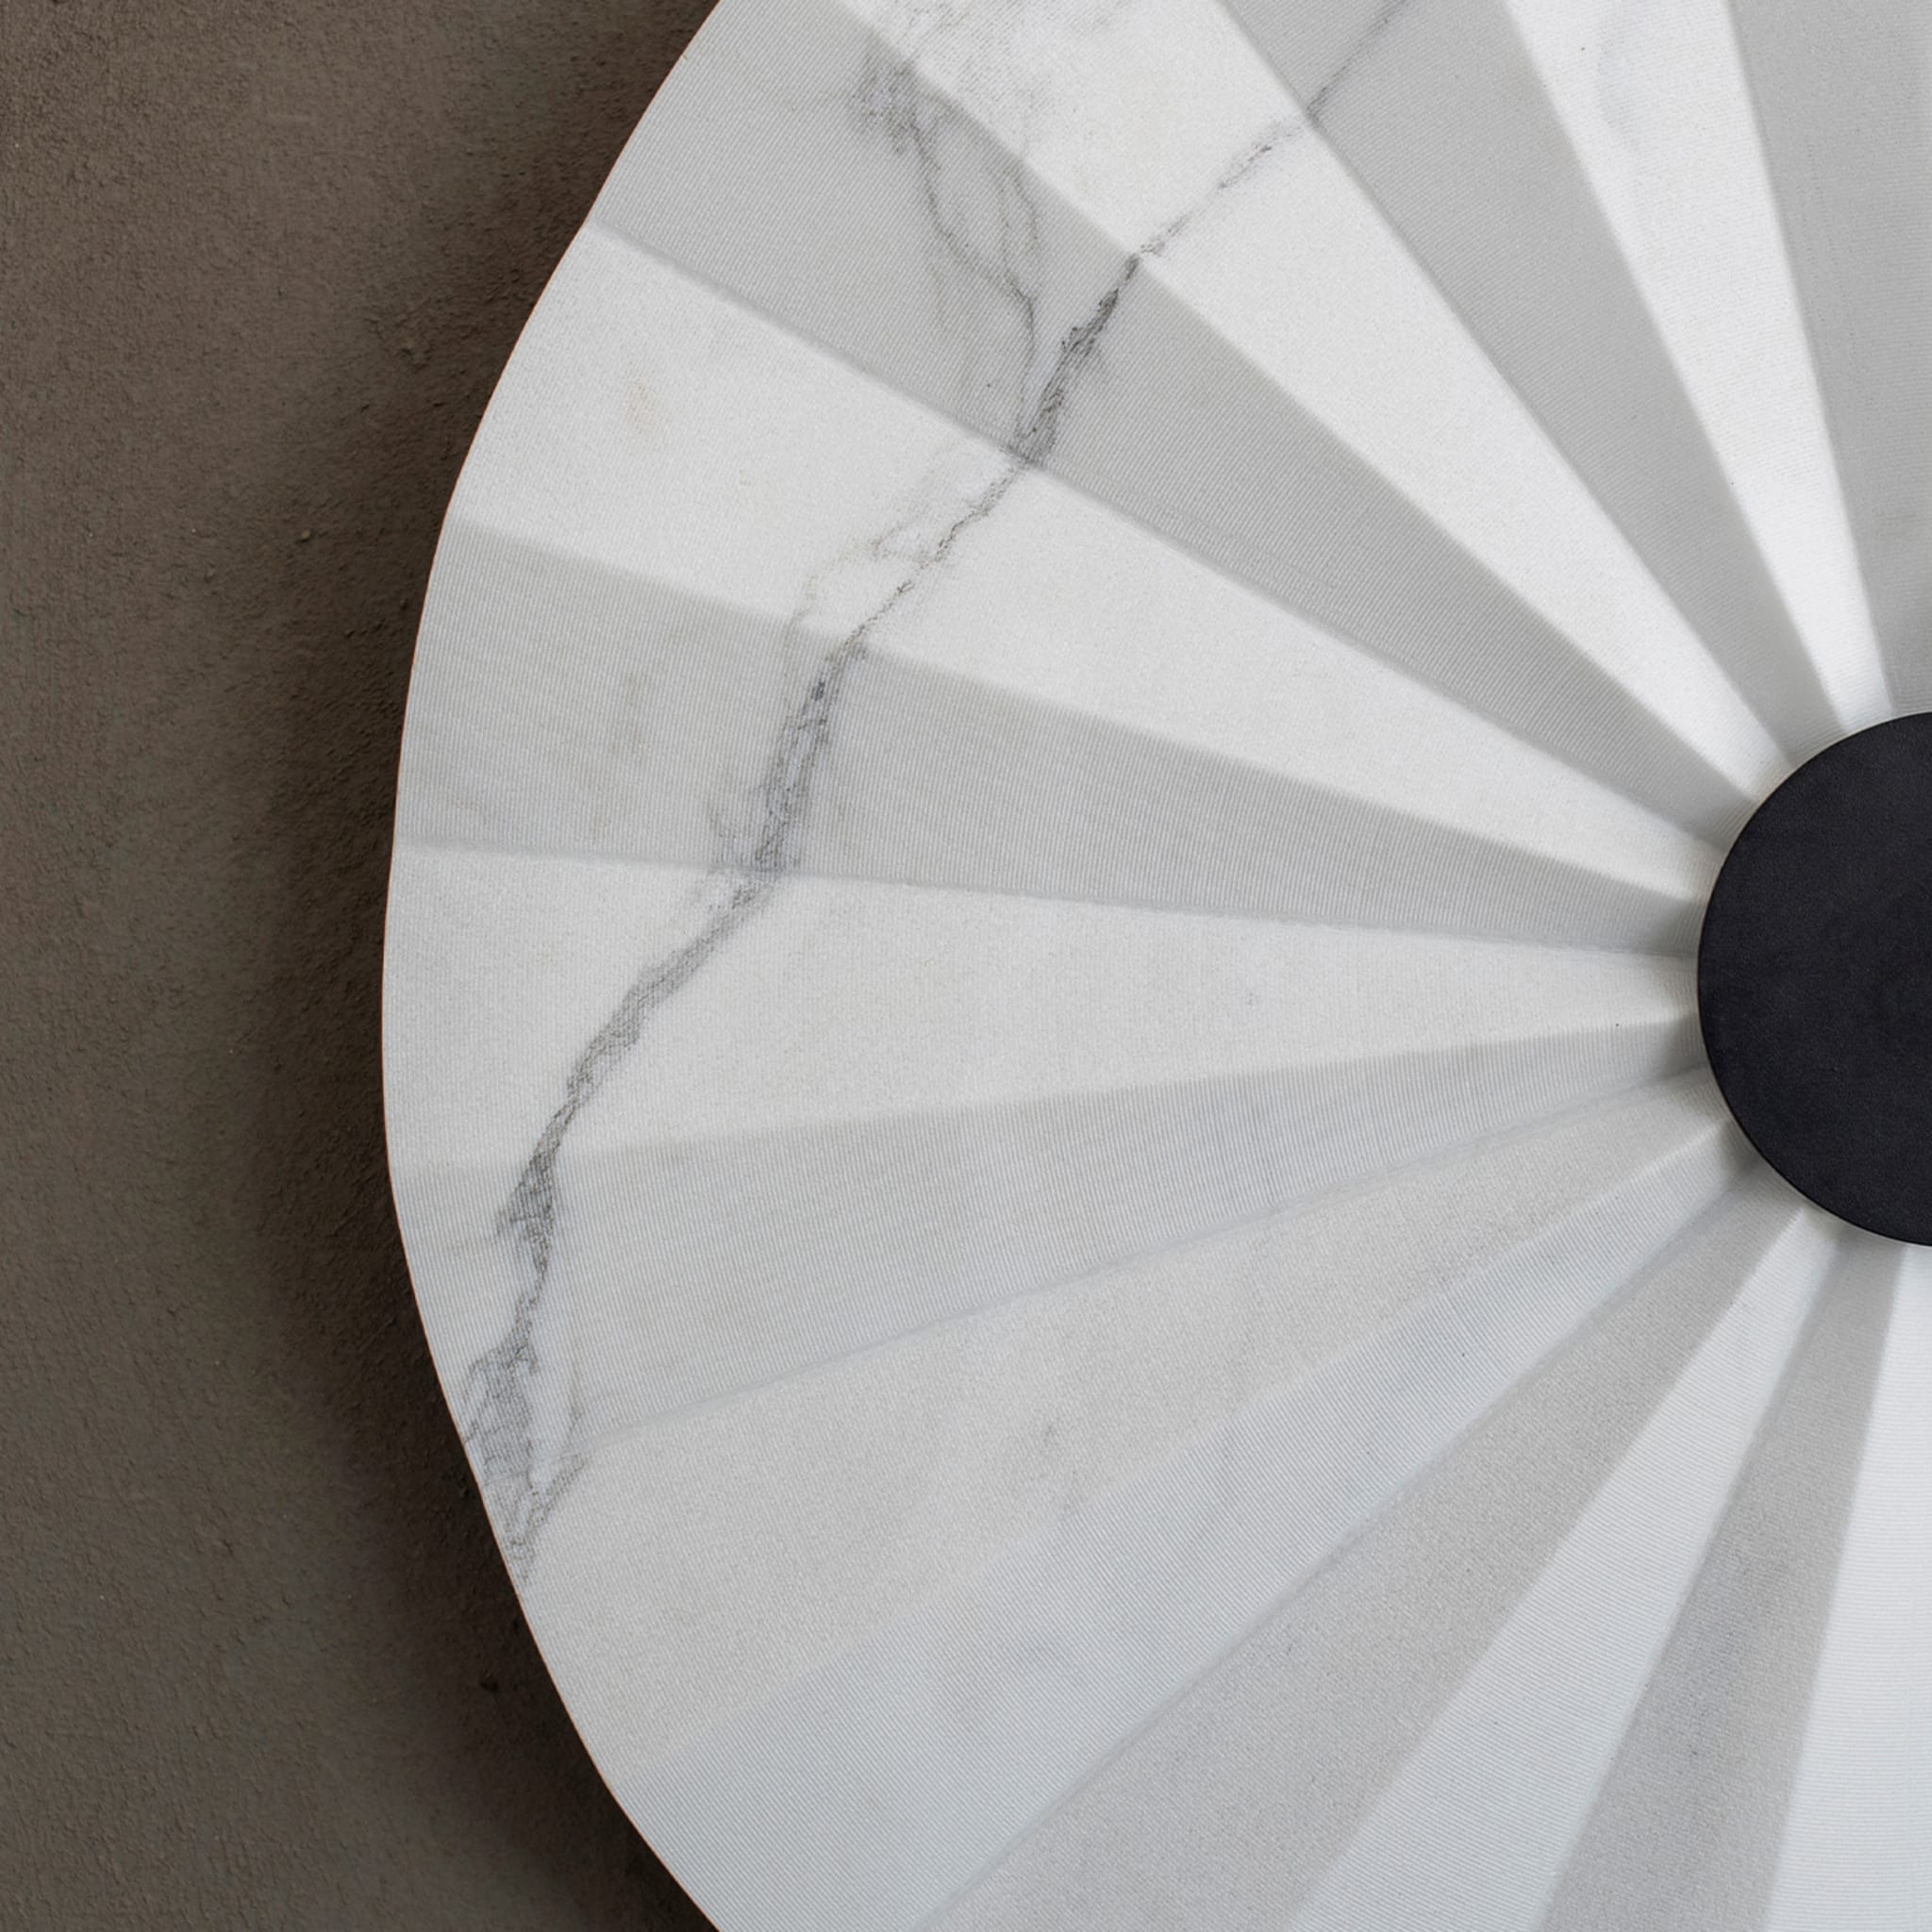 Oru Large White Carrara Wall Lamp by Stella Orlandino - Alternative view 1